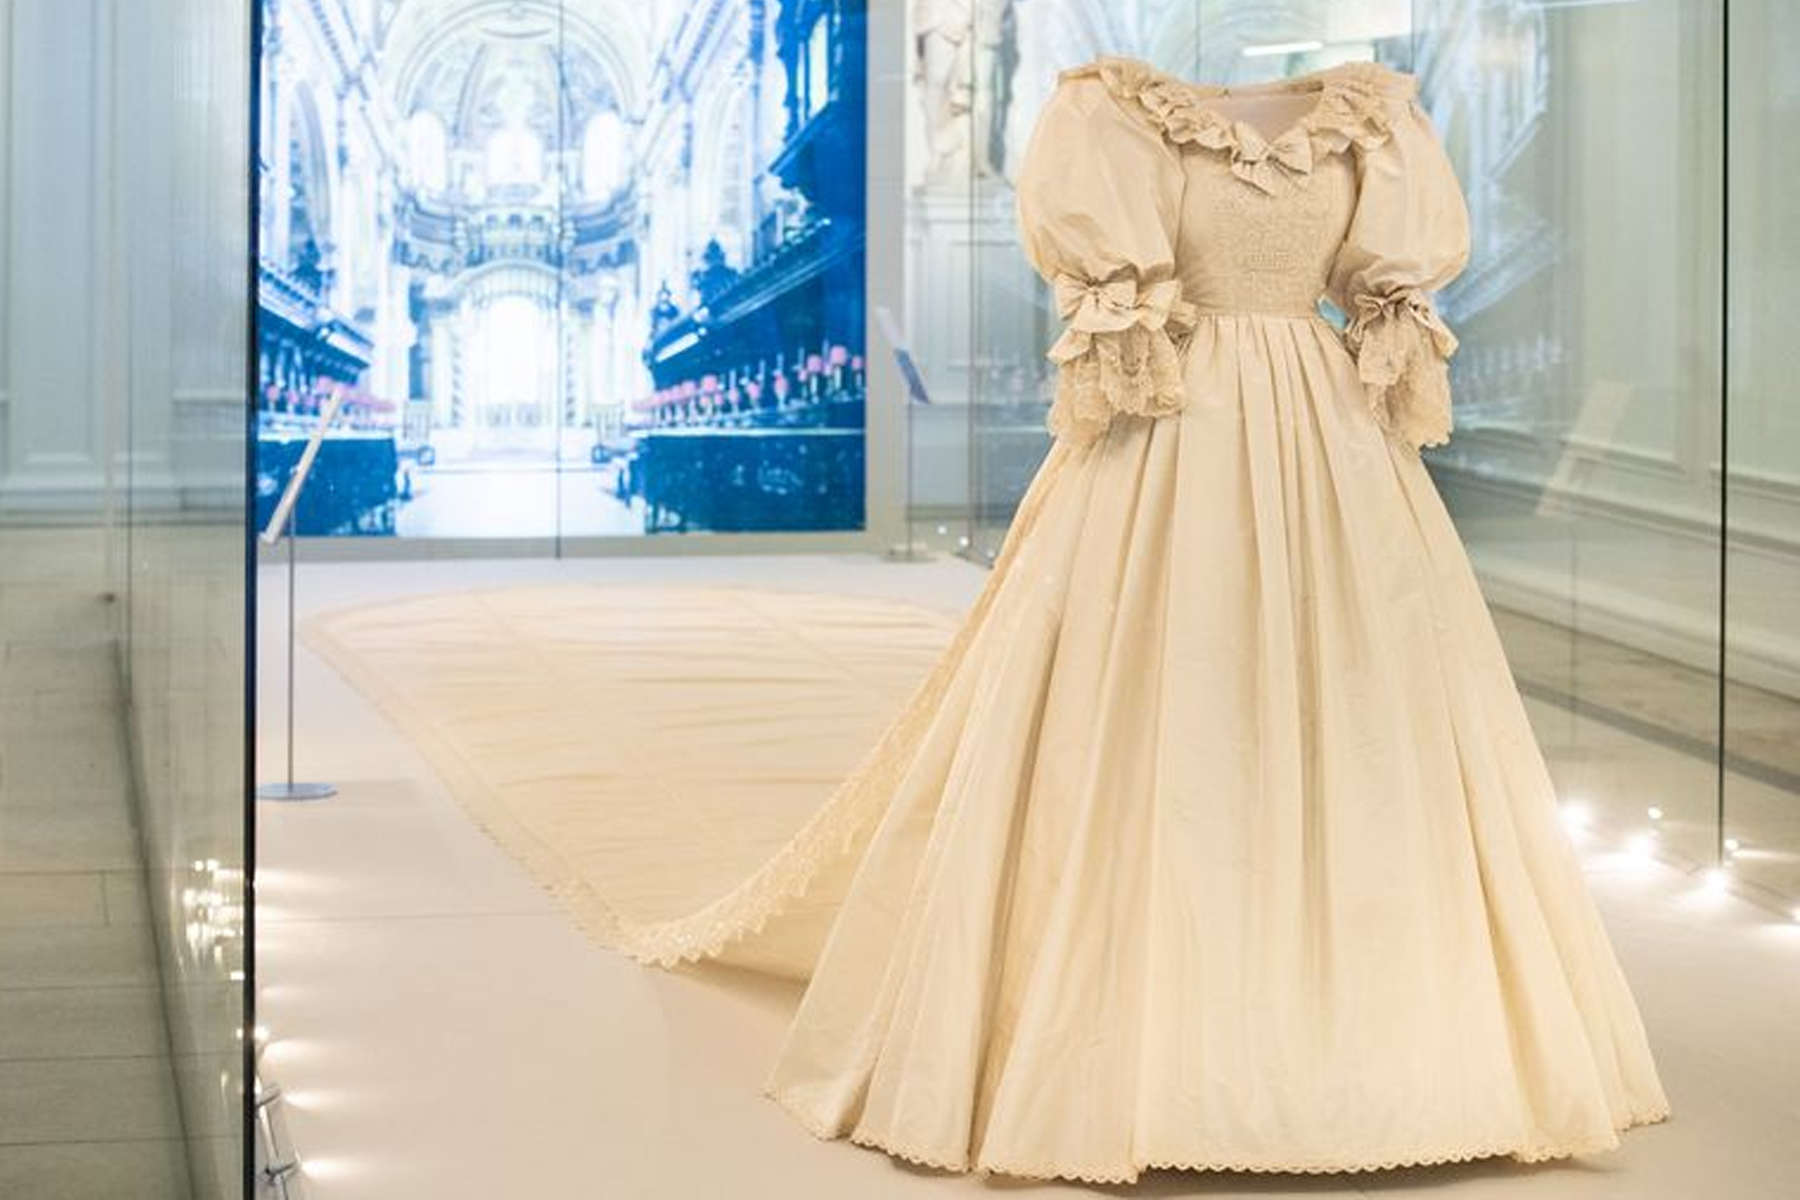 لباس عروسی پرنسس دایانا و پرنس چارلز در معرض دید عموم قرار گرفت